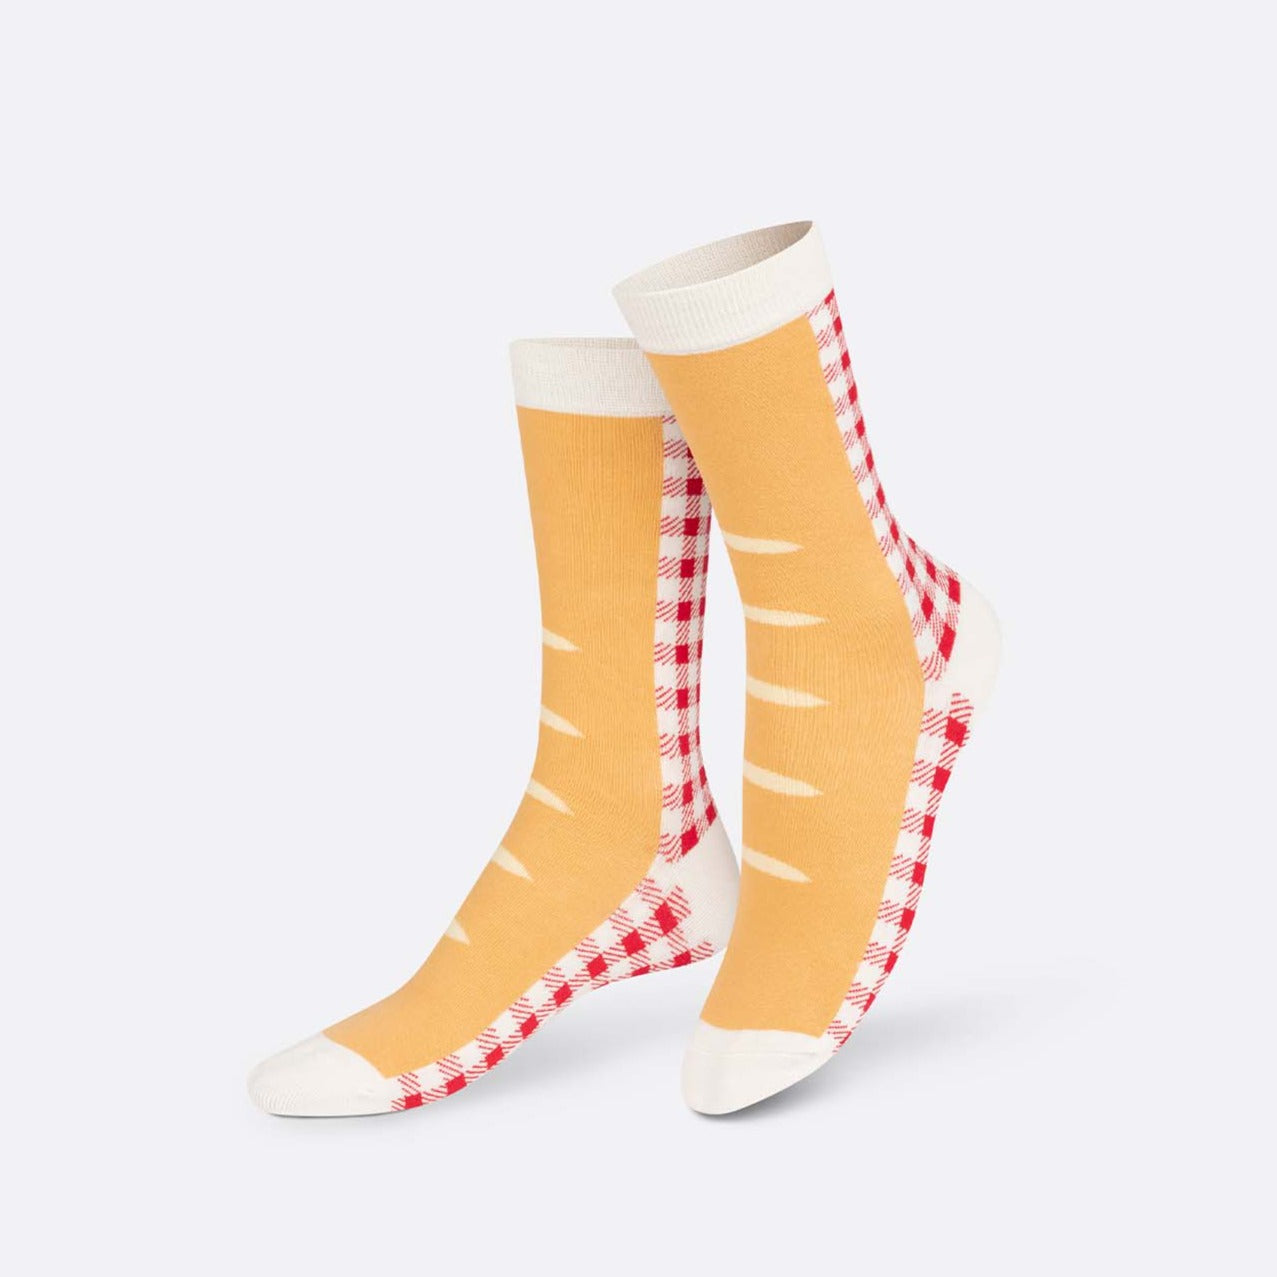 Eat My Socks: French Baguette Socks